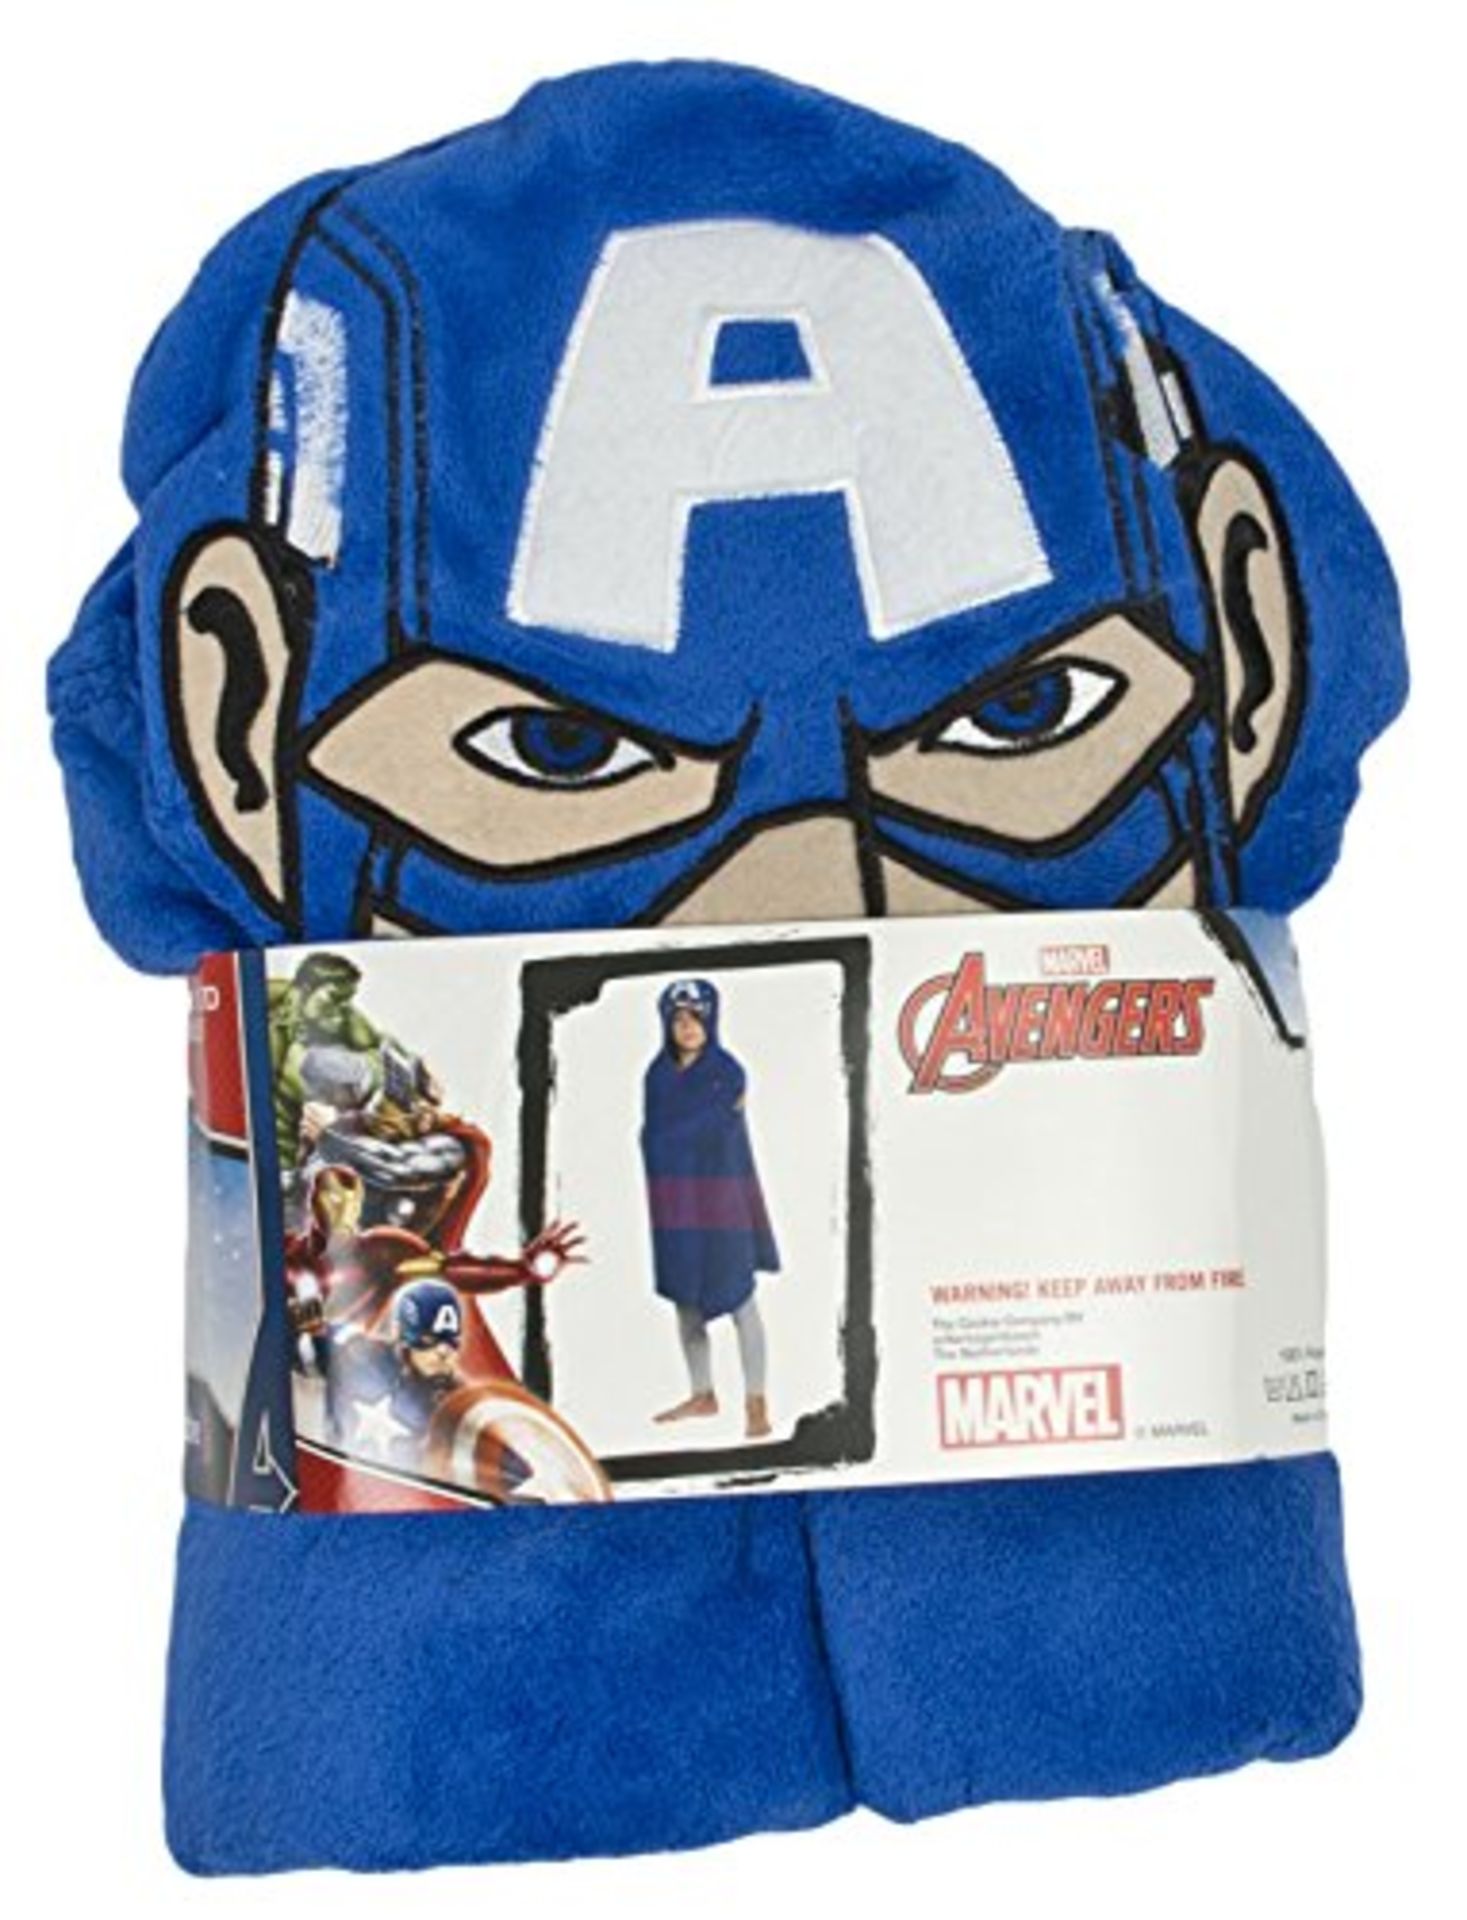 10pcs Brand new sealed Marvel Avengers Captain America Cuddle fleece blanket